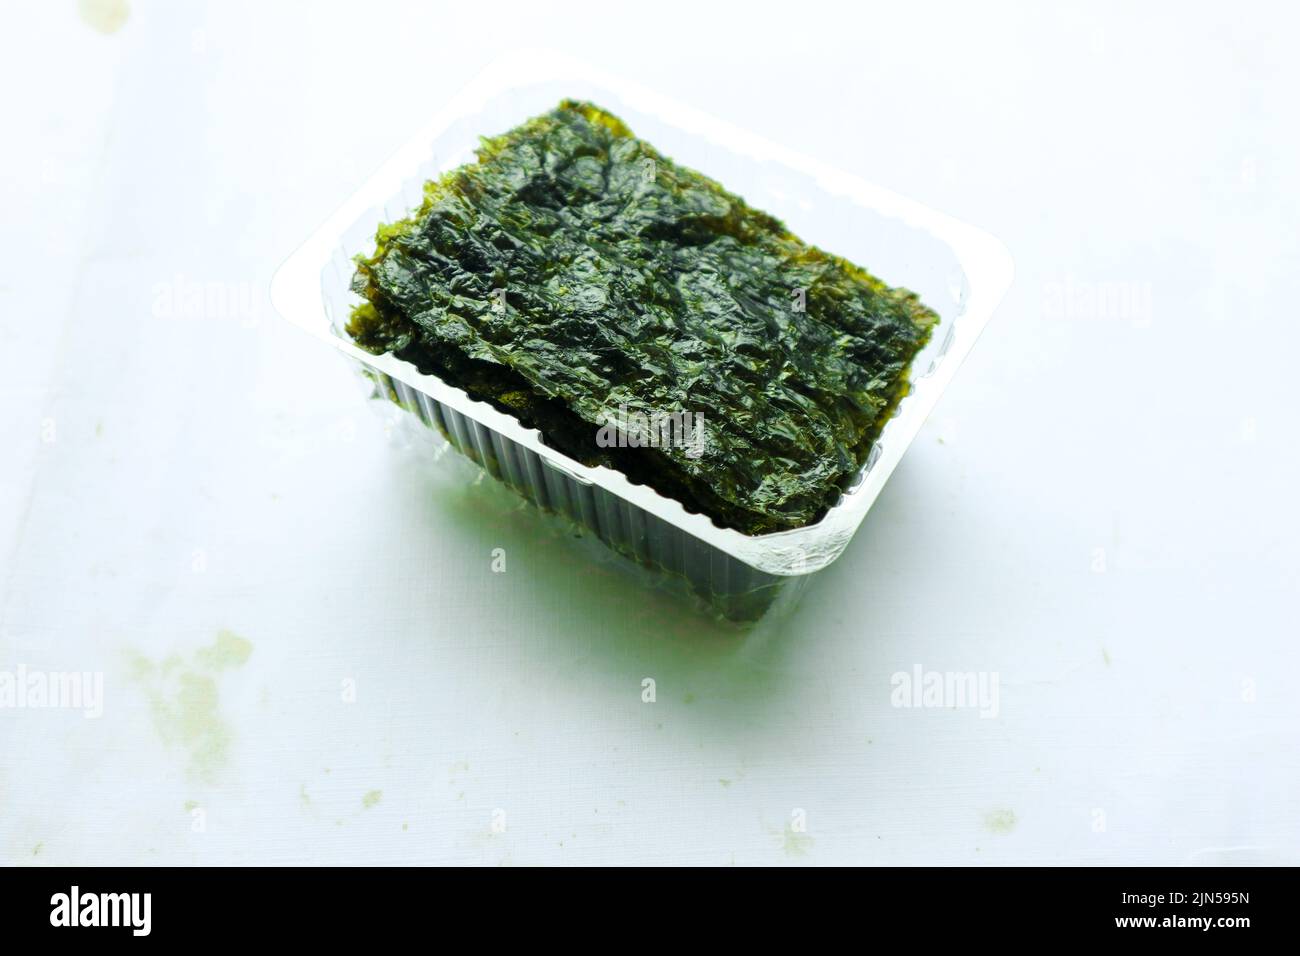 nori seaweed isolated on white background. Japanese food nori. Dry seaweed sheets. Stock Photo